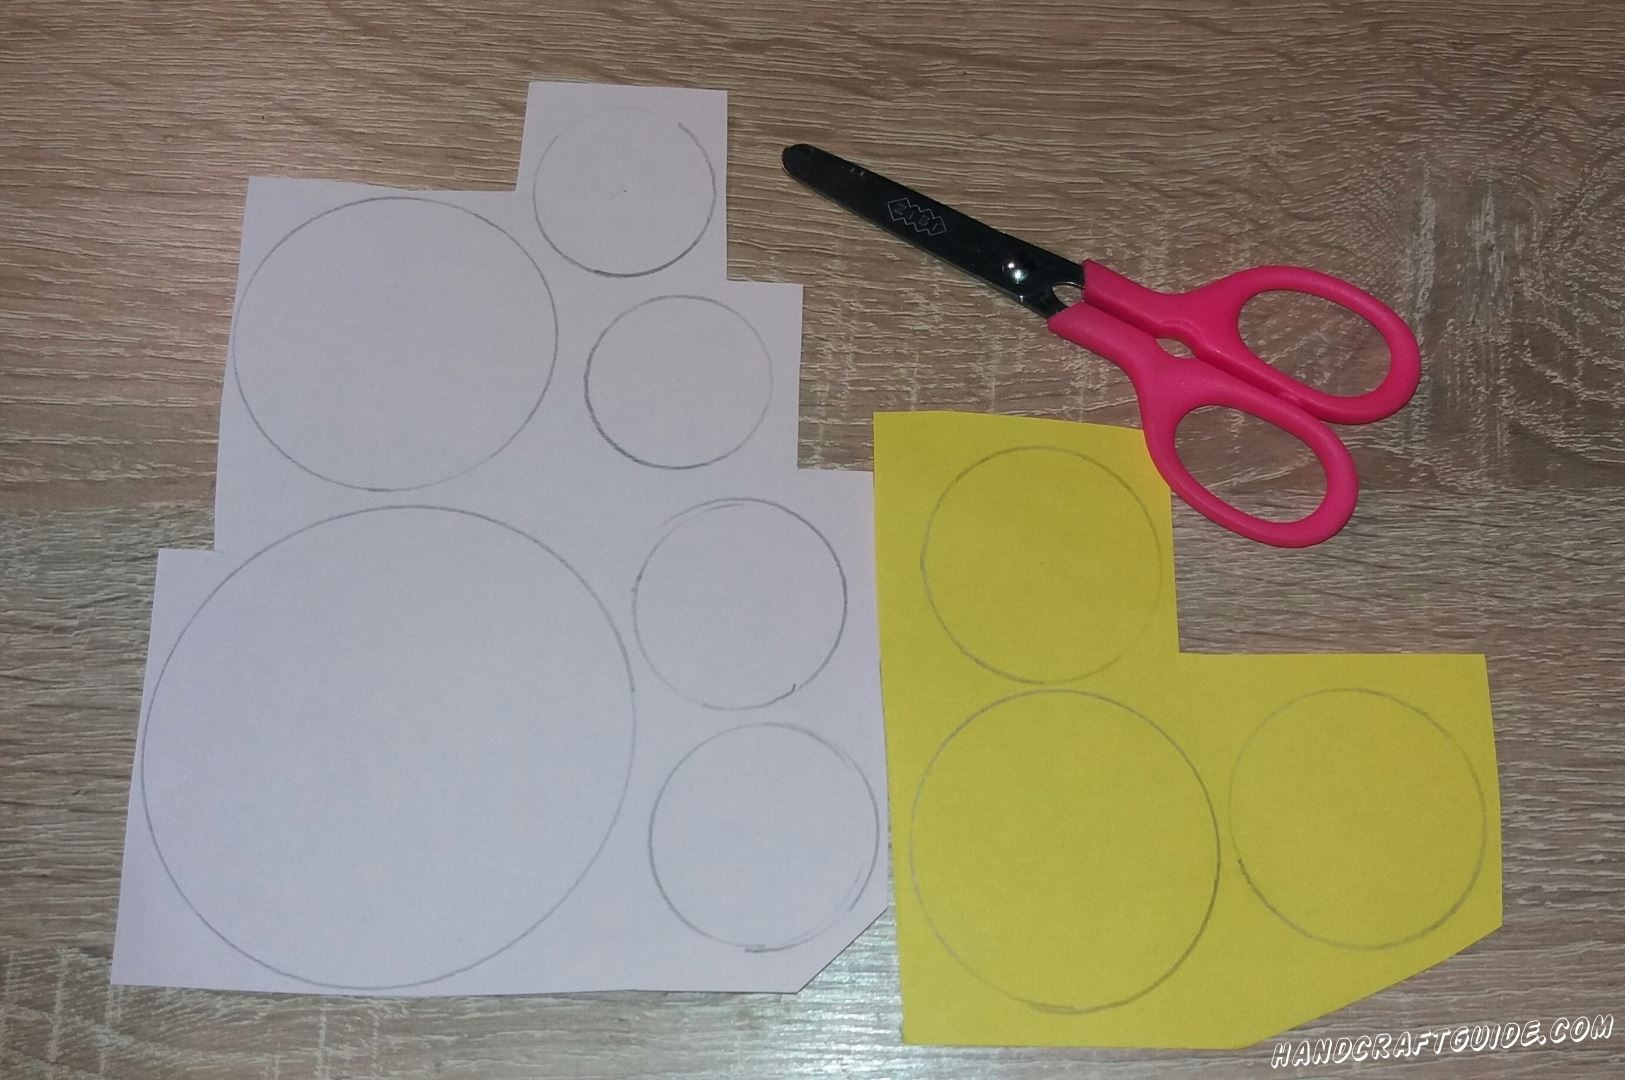 Для начала вырезаем из бумаги все необходимые детальки. Берем светло-розовую бумагу и вырезаем один большой круг, один круг среднего размера и 4 малых круга малого размера. Теперь берем желтую бумагу вырезаем 1 круг среднего размера, и 2 маленьких круга